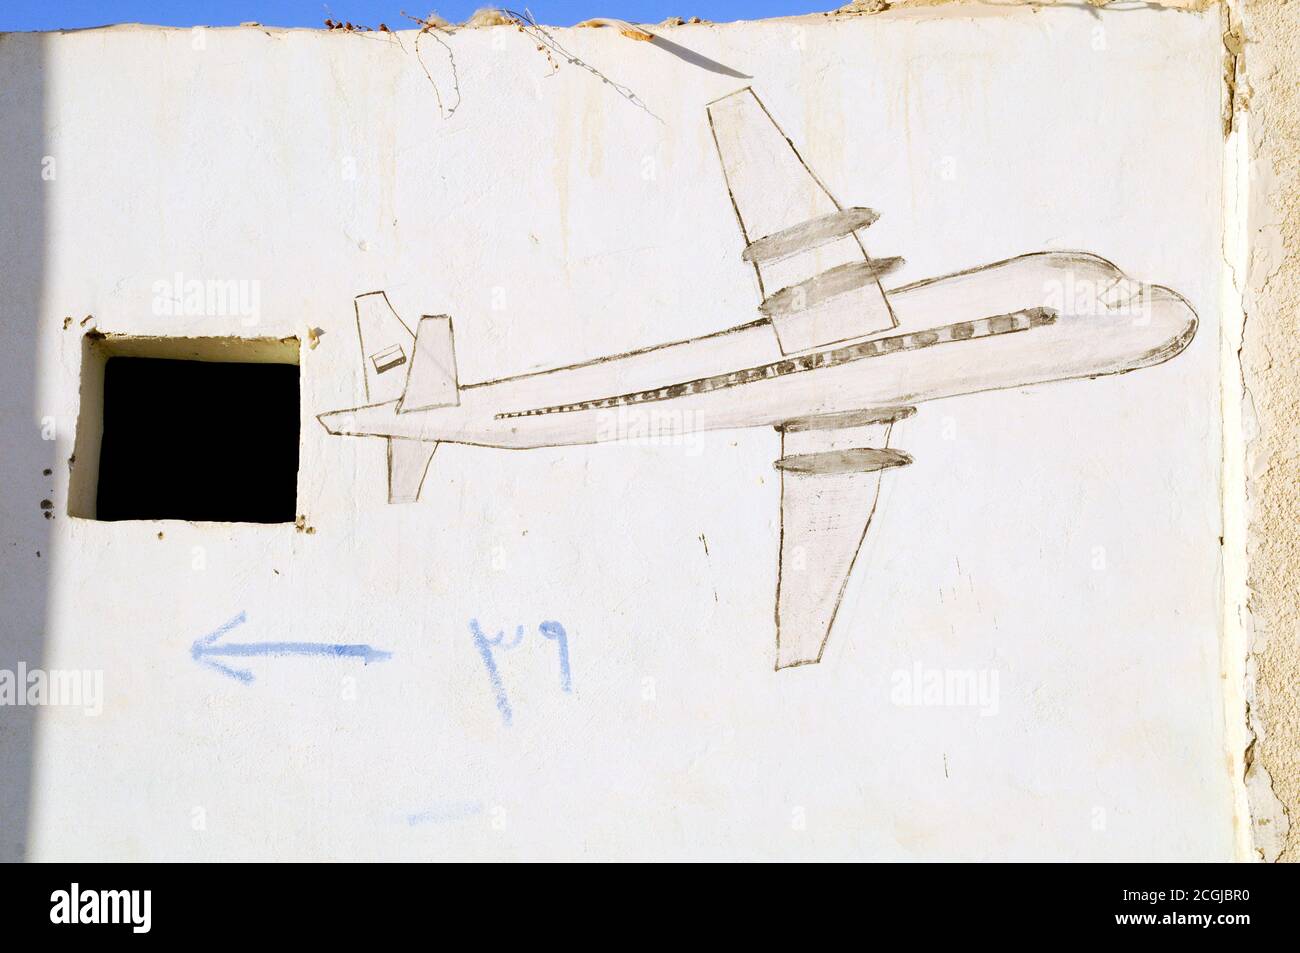 Eine Graffiti-Zeichnung eines Flugzeugs an einer Wand im Dorf Farafra Oasis in der Sahara, im New Valley, Ägypten. Stockfoto